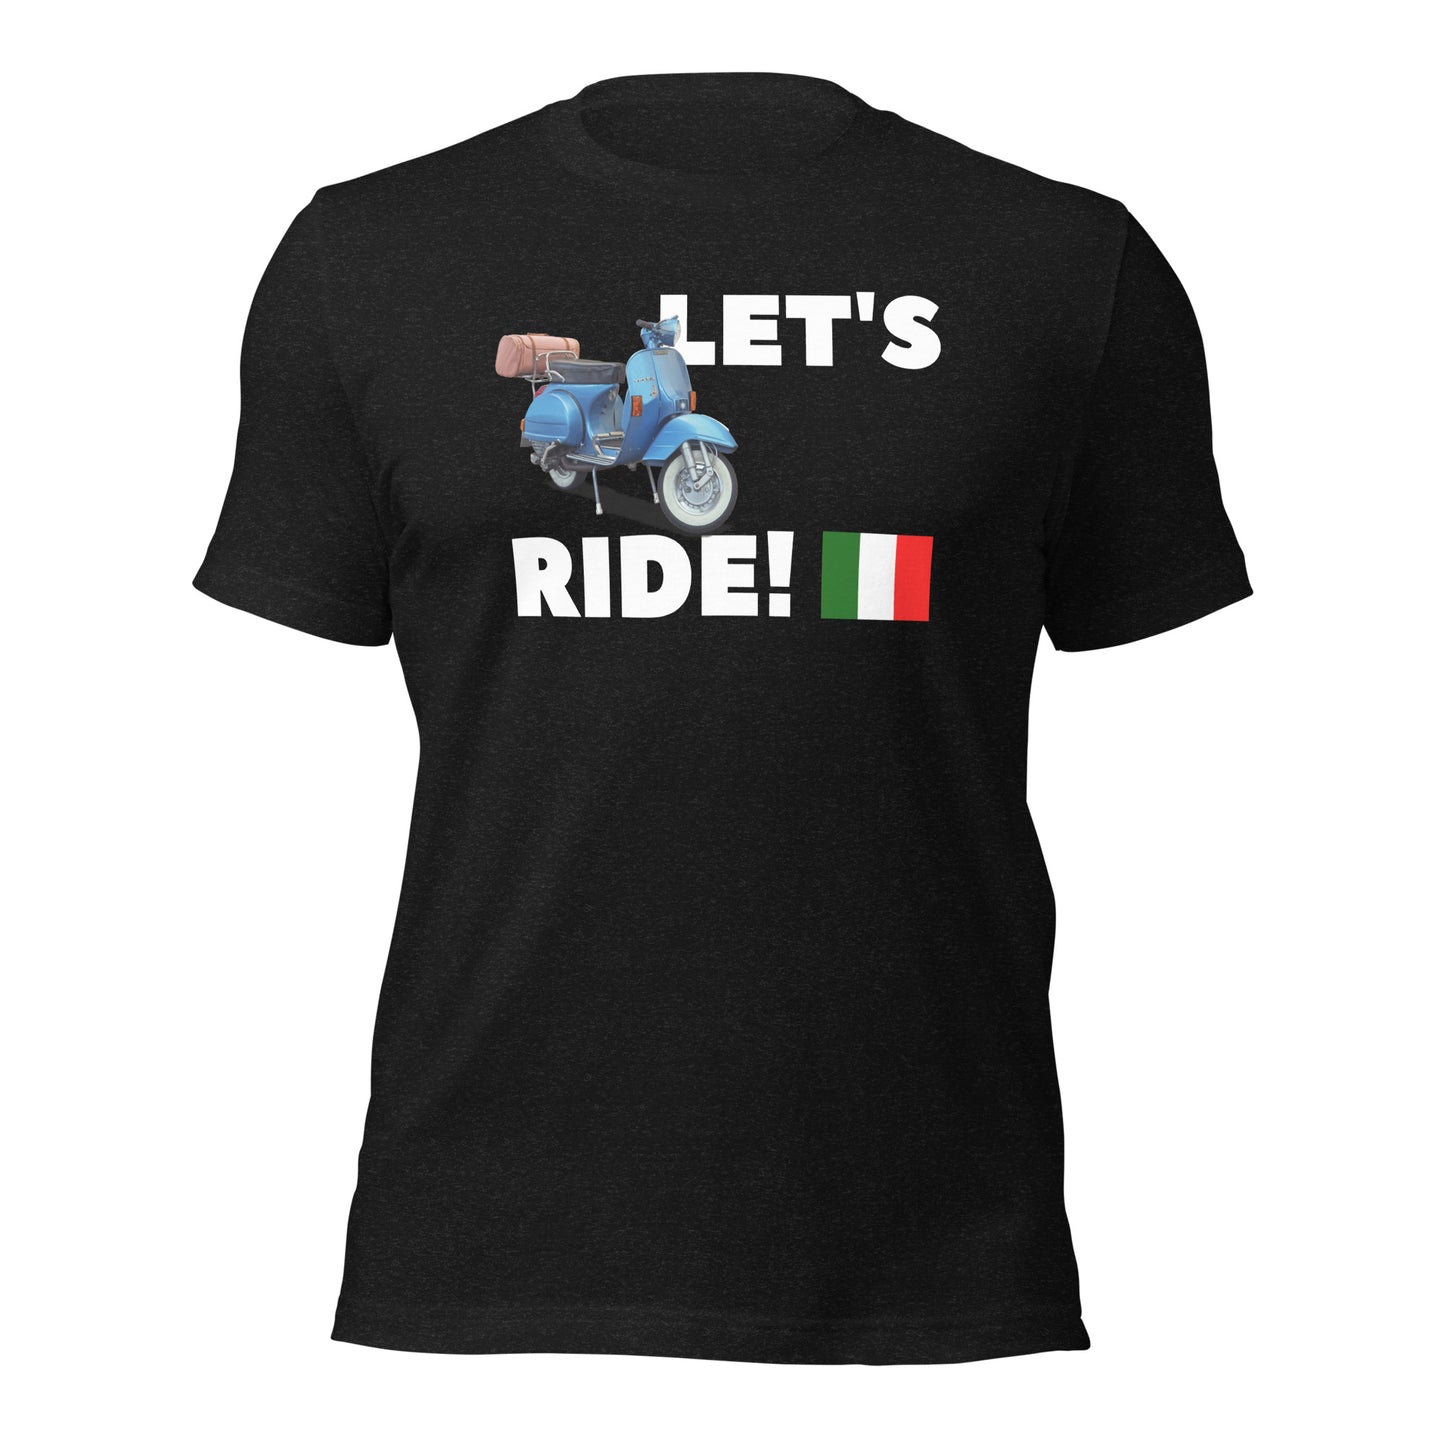 Let's Ride - Unisex t-shirt